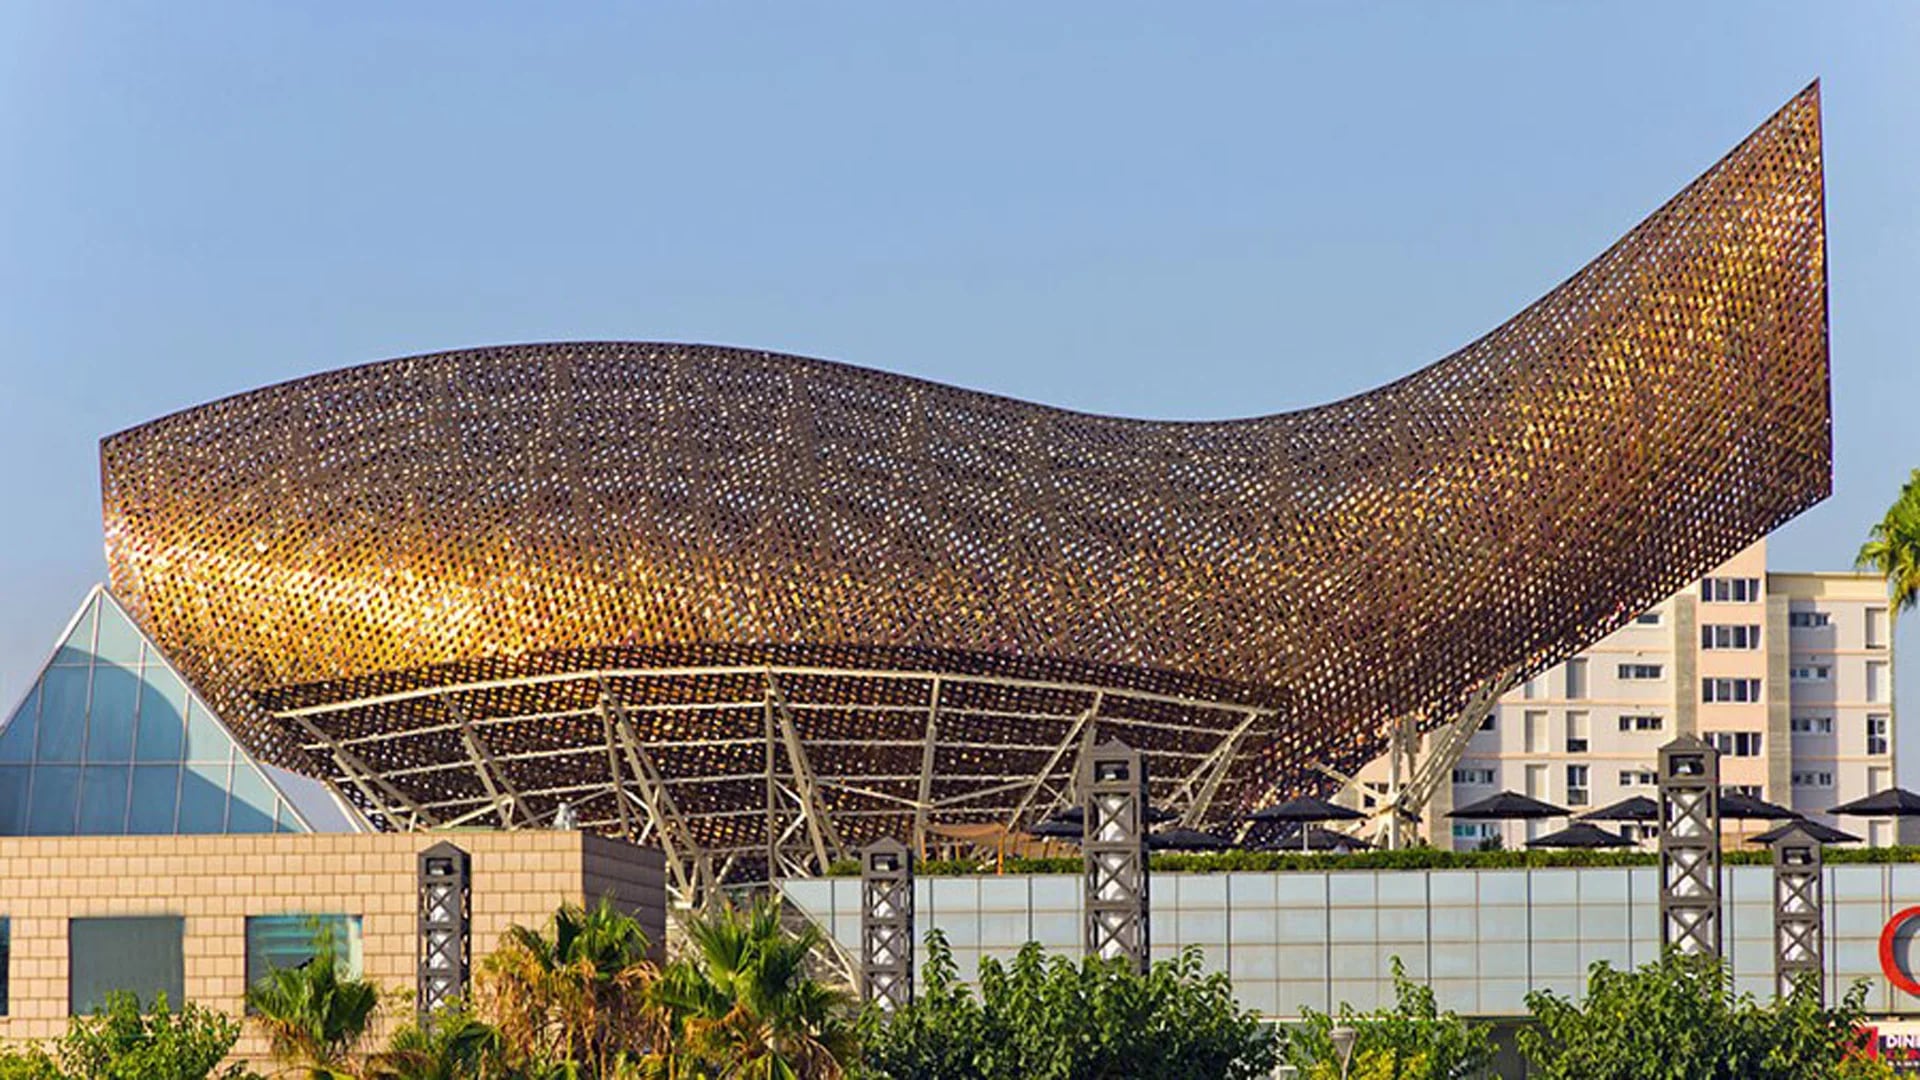 Cuenta con 56 metros de largo y 35 metros de altura y está realizado con acero color bronce